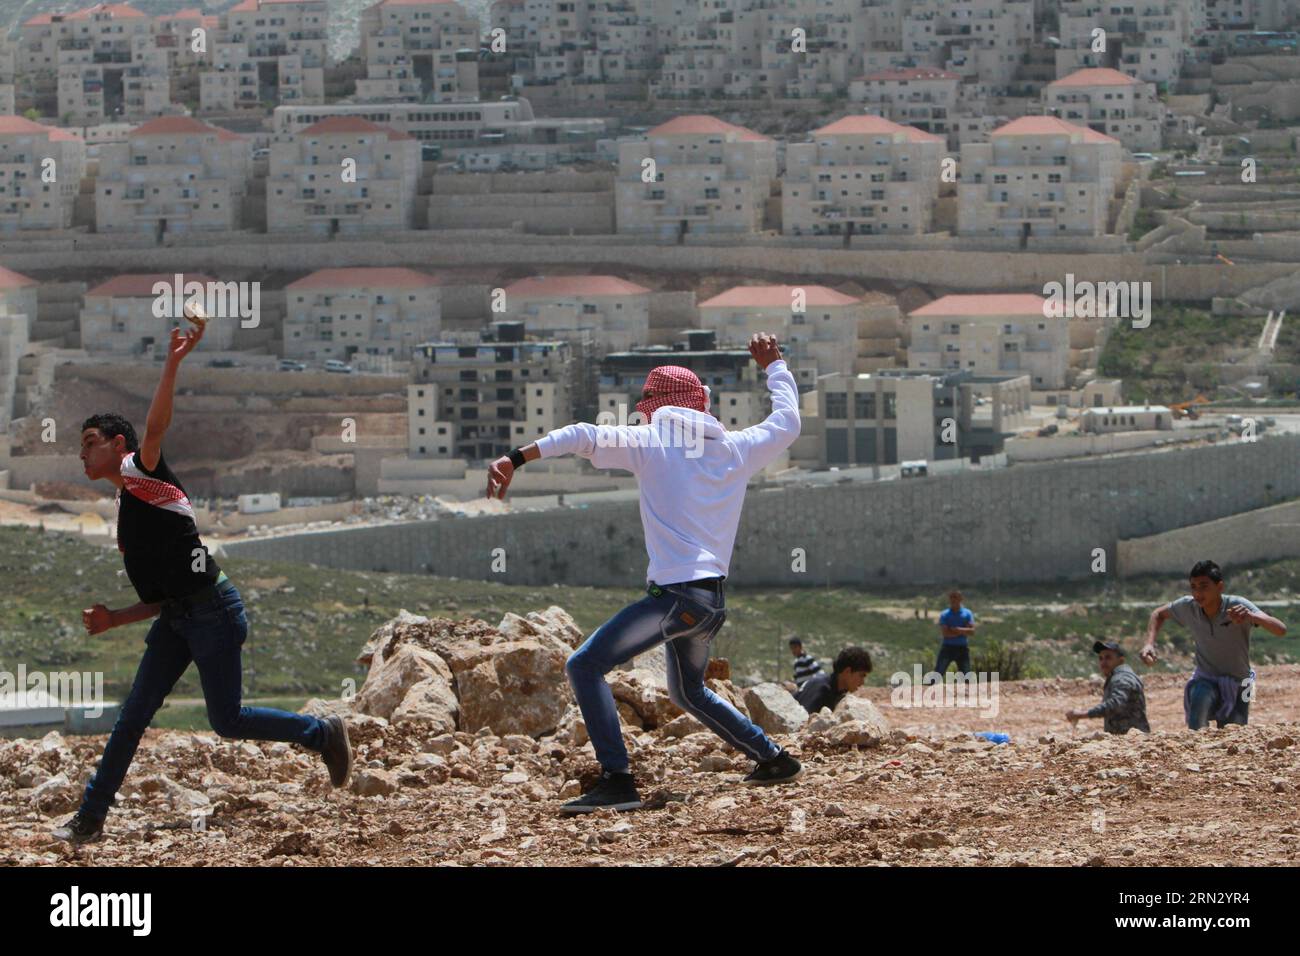 (150330) -- BETLEMME, 30 marzo 2014 -- i manifestanti palestinesi lanciano pietre contro i soldati israeliani durante una protesta che segna la giornata della Terra, nel villaggio di Wadi Fukin vicino alla città di Betlemme in Cisgiordania il prossimo marzo. 30, 2015. I palestinesi hanno celebrato la giornata della Terra il 30 marzo, la commemorazione annuale delle proteste nel 1976 contro l'appropriazione da parte di Israele di terreni di proprietà araba in Galilea. MIDEAST-BETHLEHEM-LAND-DAY-PROTESTA LuayxSababa PUBLICATIONxNOTxINxCHN Betlemme marzo 30 2014 i manifestanti PALESTINESI lanciano pietre contro i soldati israeliani durante una protesta che segna la giornata del Paese nel villaggio di Wadi vicino al CISGIORDANIA Foto Stock